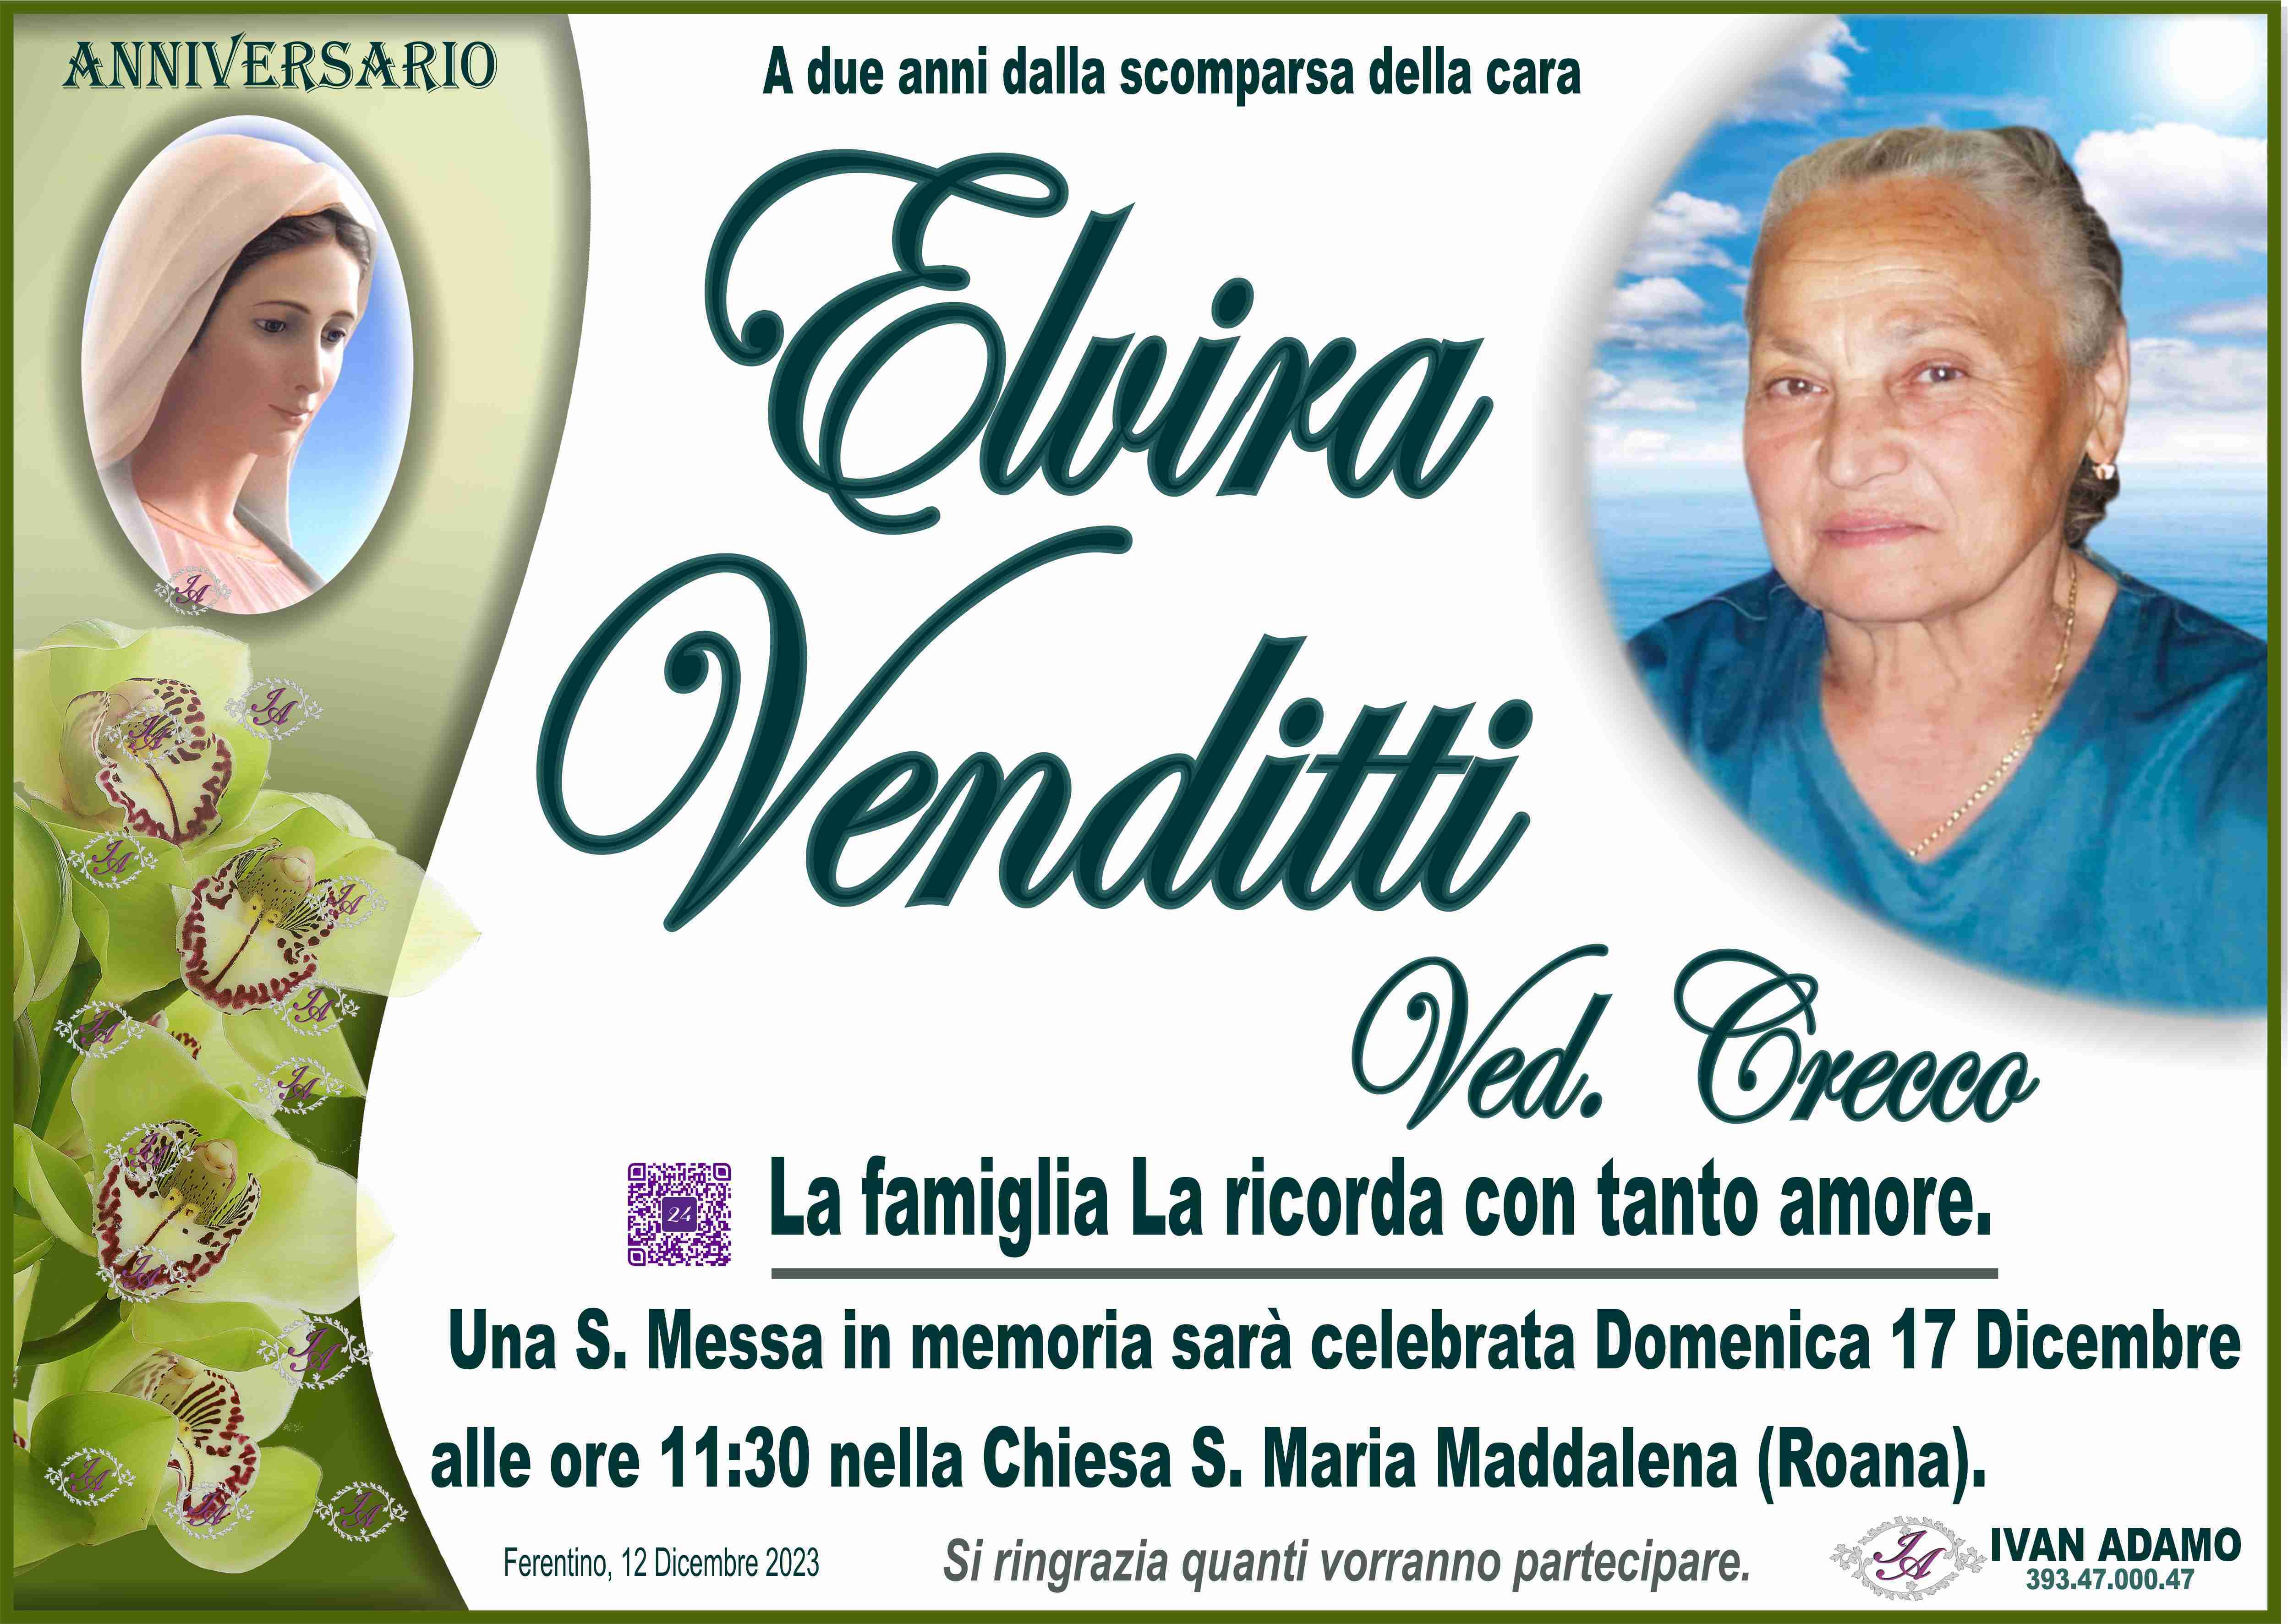 Elvira Venditti